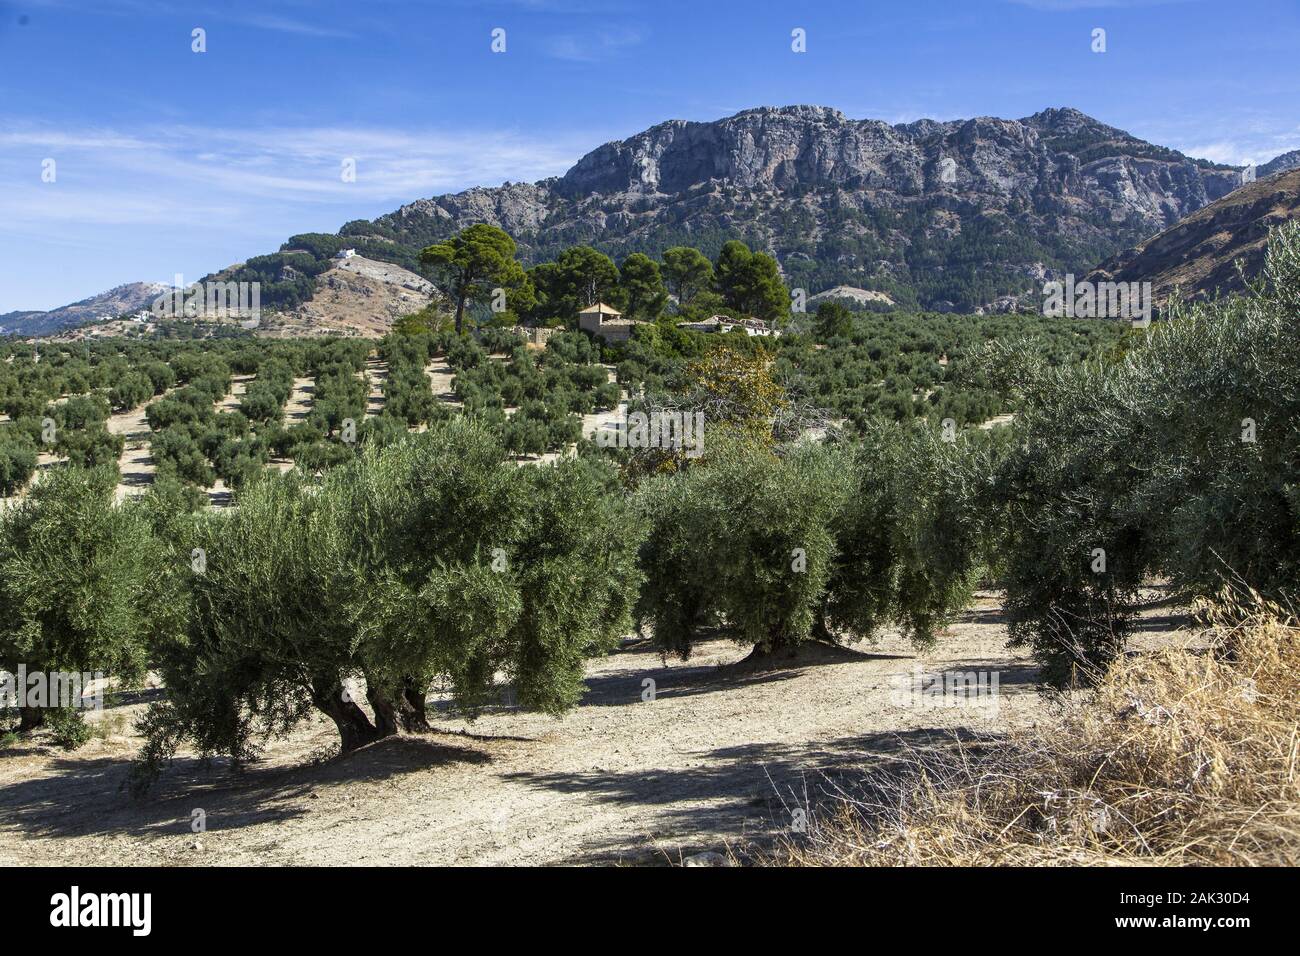 Provinz Jaen/Cazorla: Olivenlandschaft am Rande der Sierra de Cazorla, Andalusien | usage worldwide Stock Photo